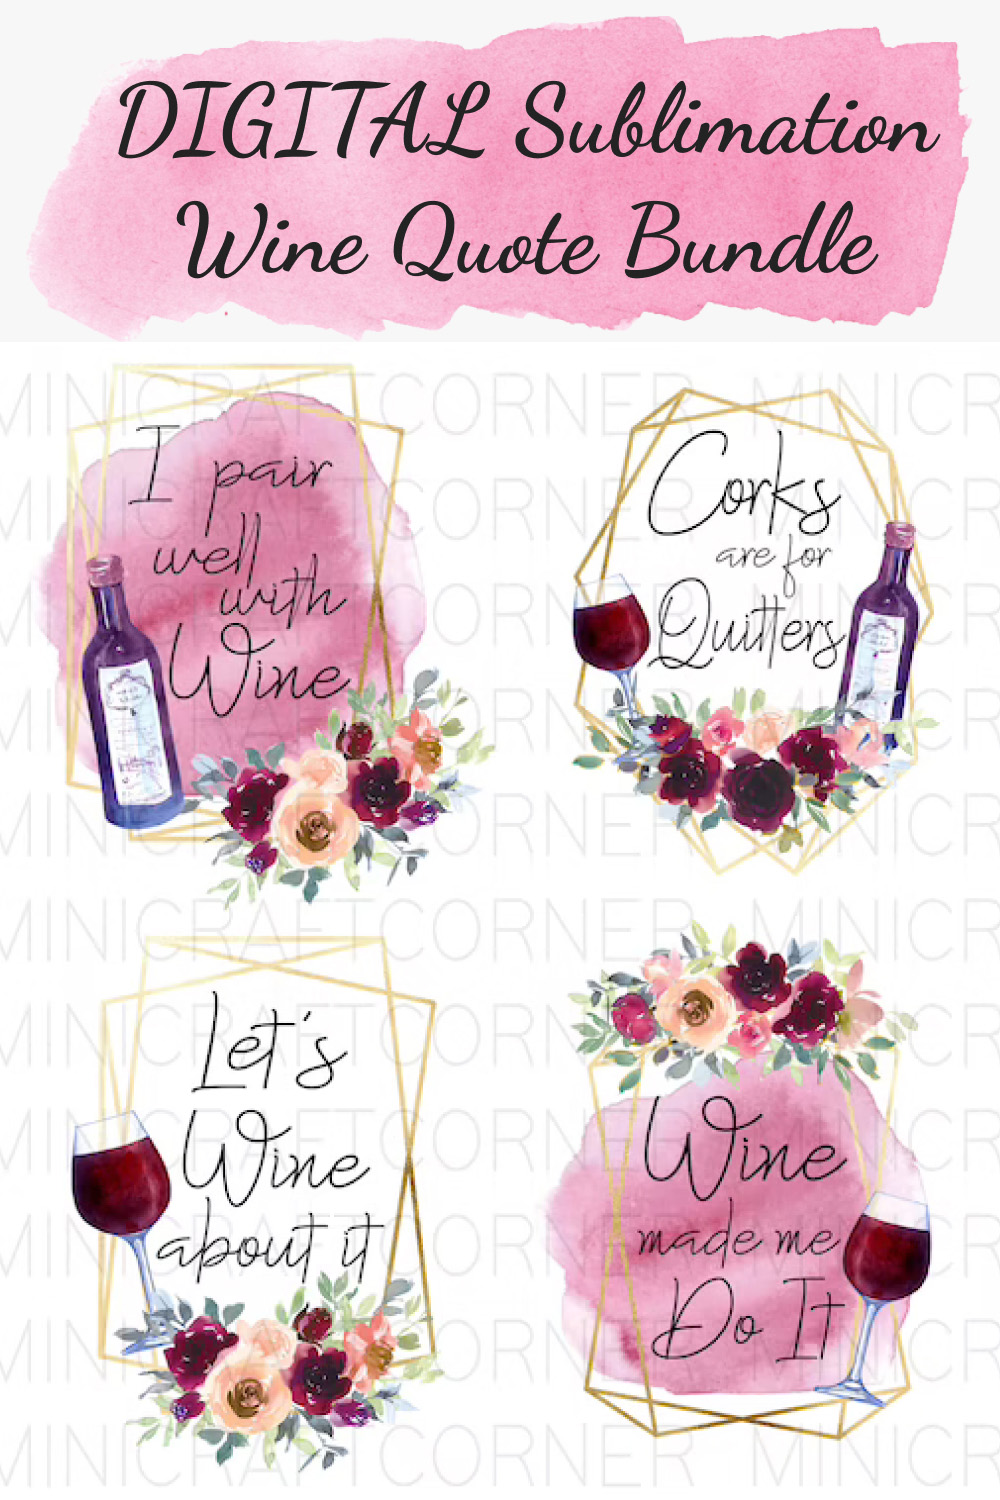 digital sublimation wine quote bundle 01 1000x1500